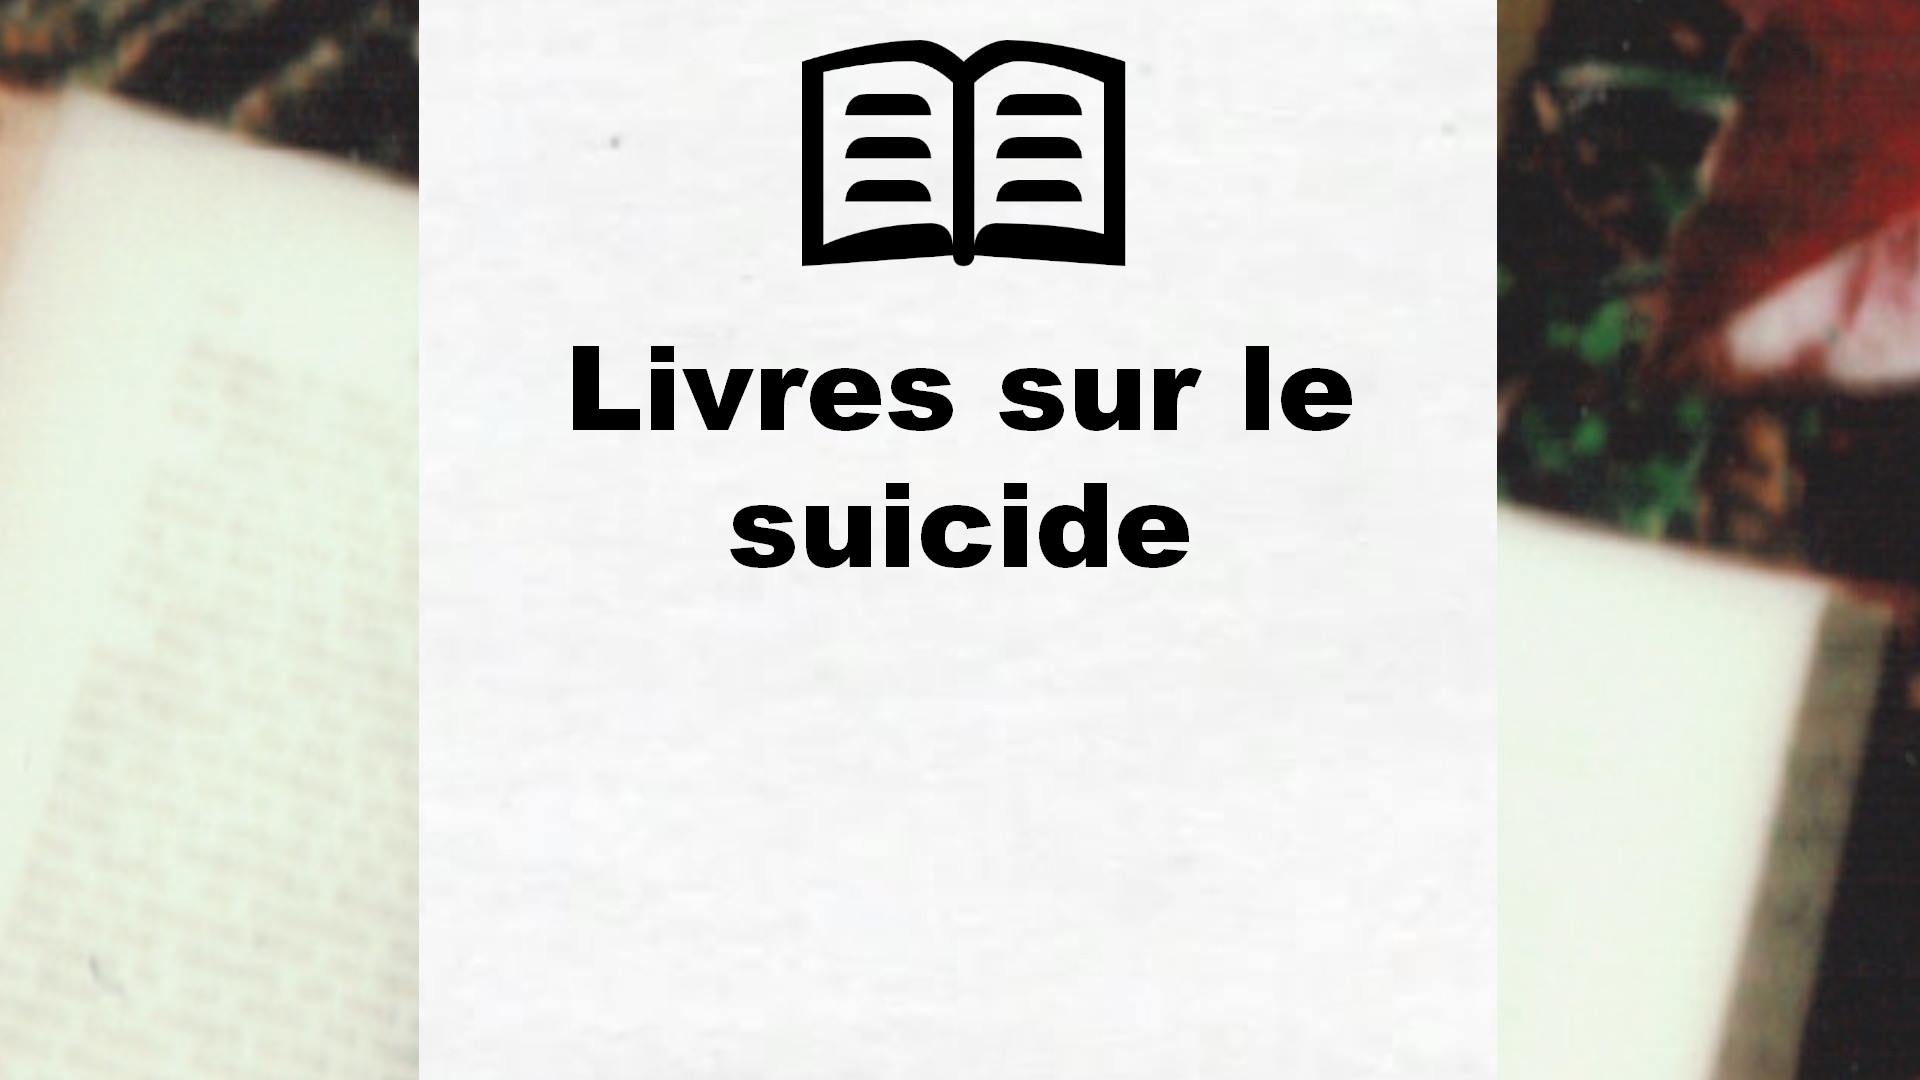 Livres sur le suicide